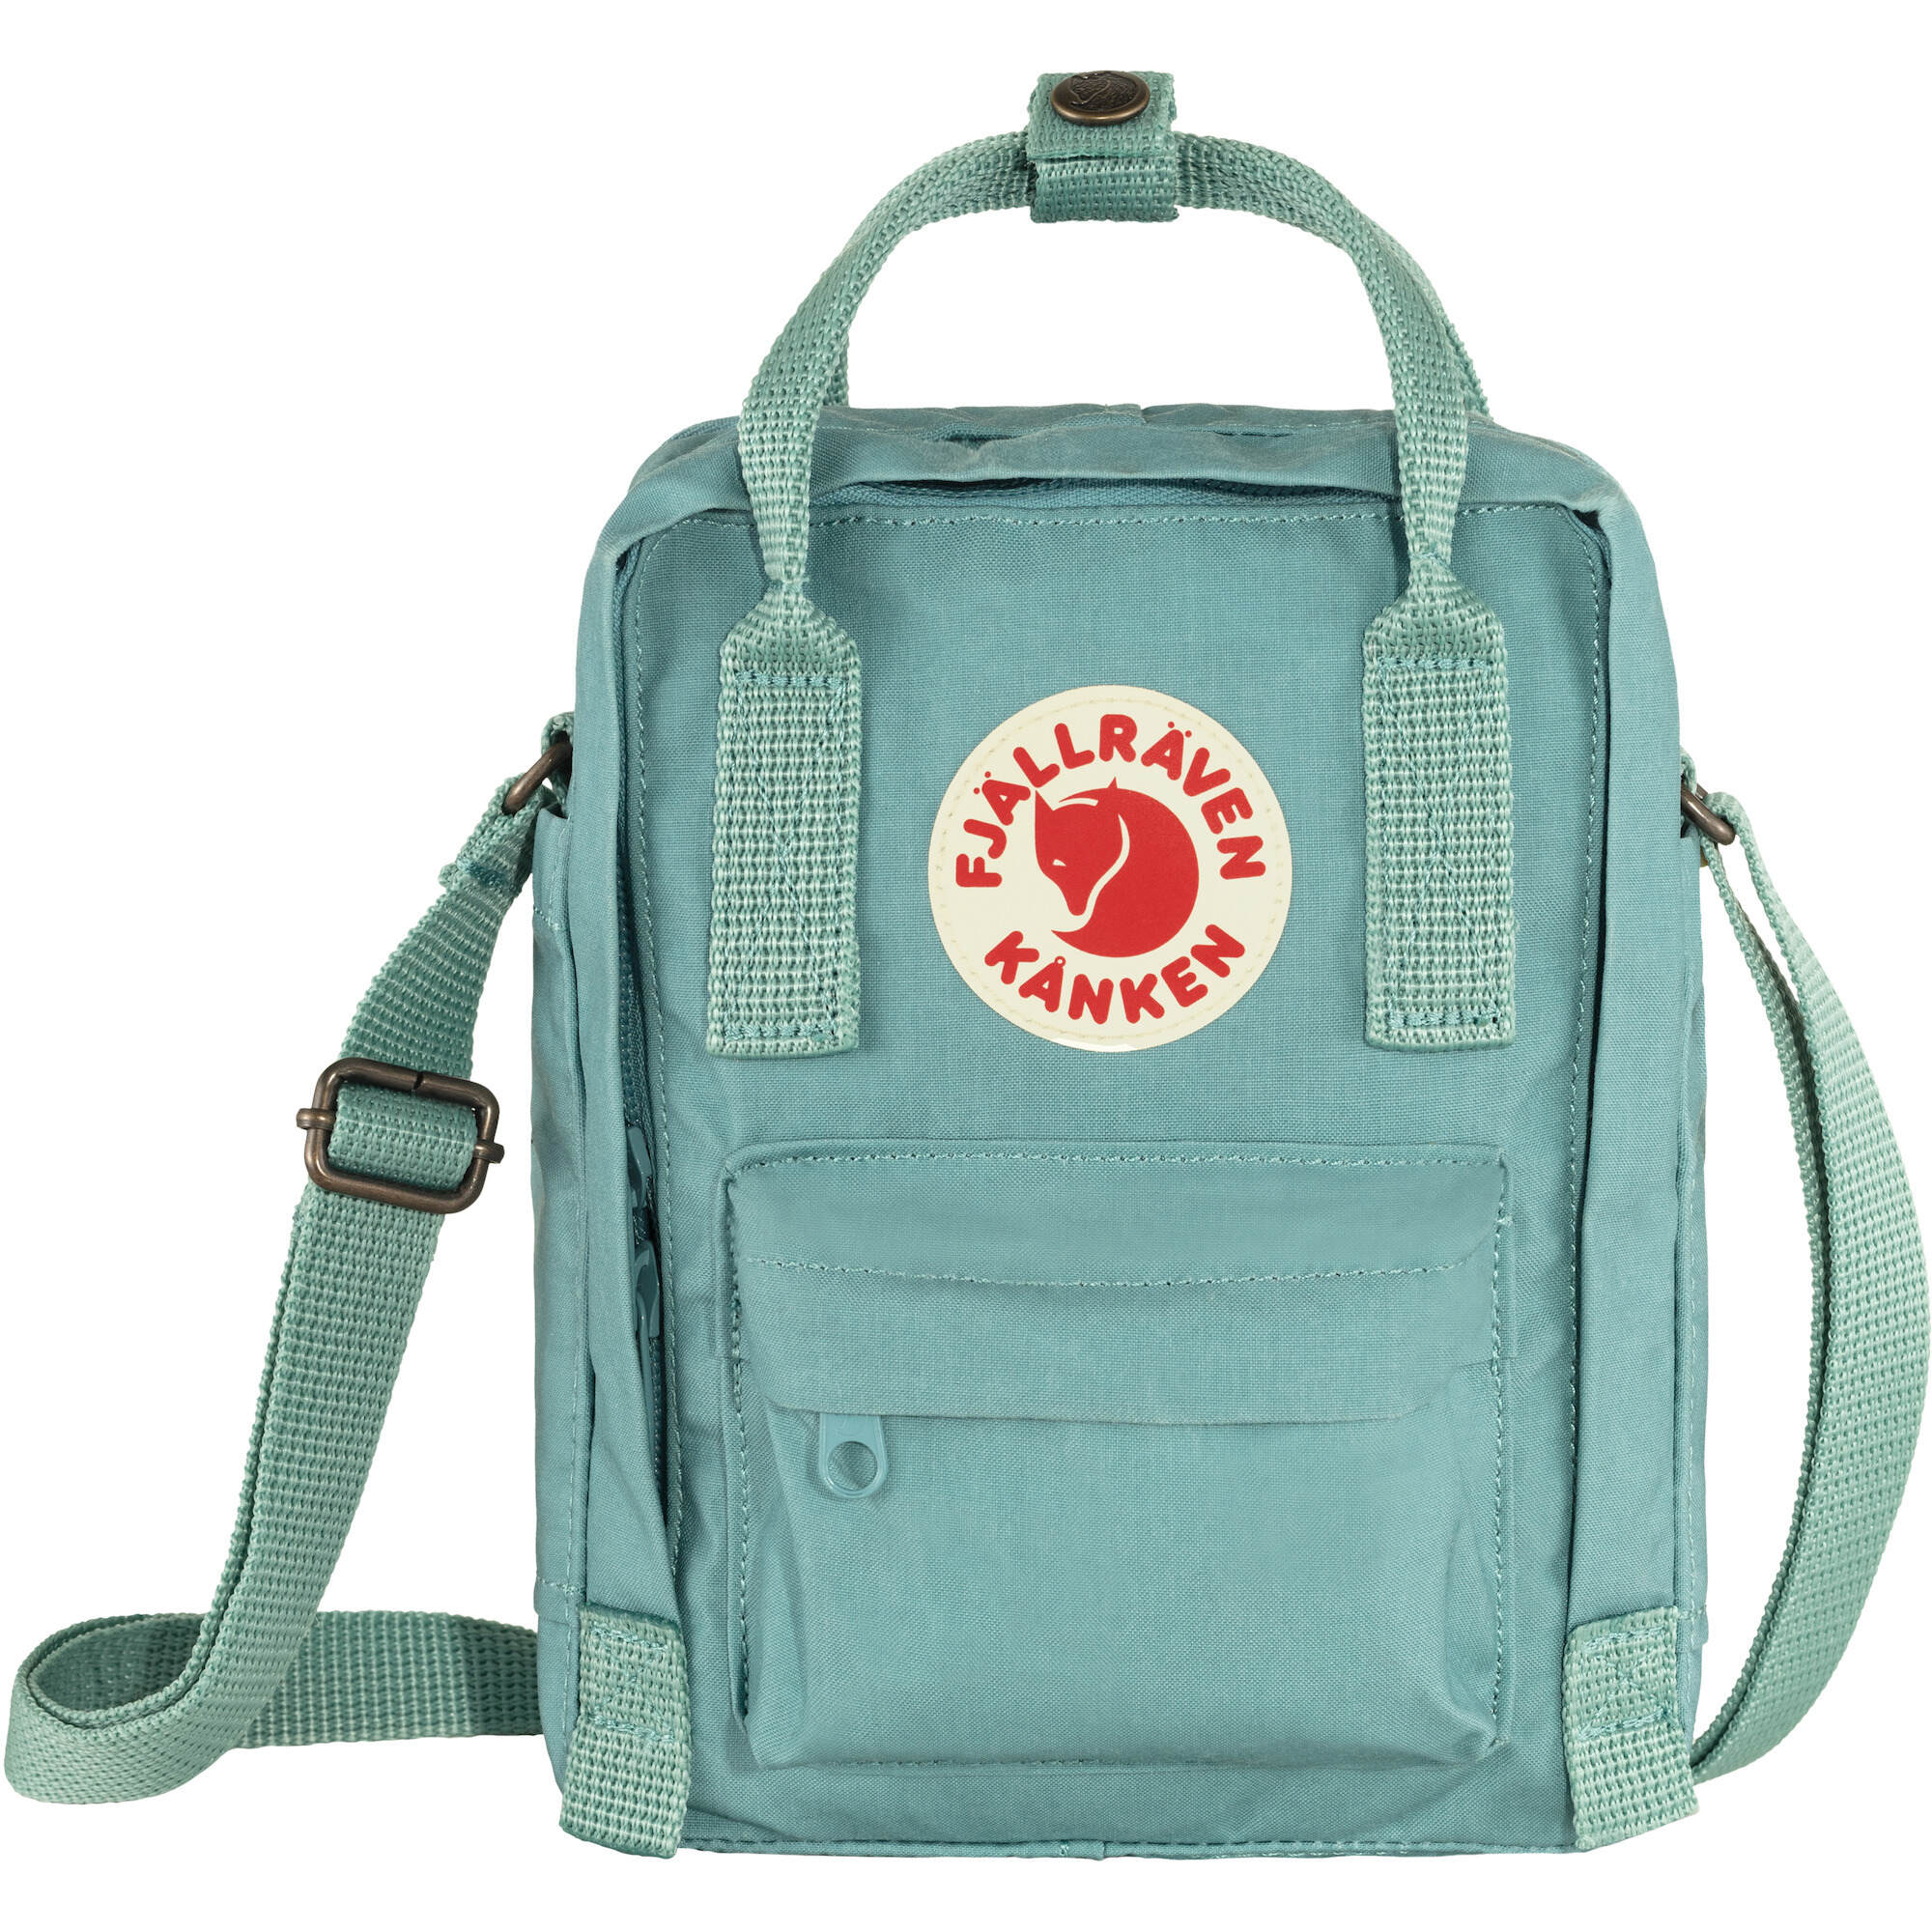 Fjallraven Kanken Outdoor Backpack Handbag School Bag Waterproof Rucksacks UK 